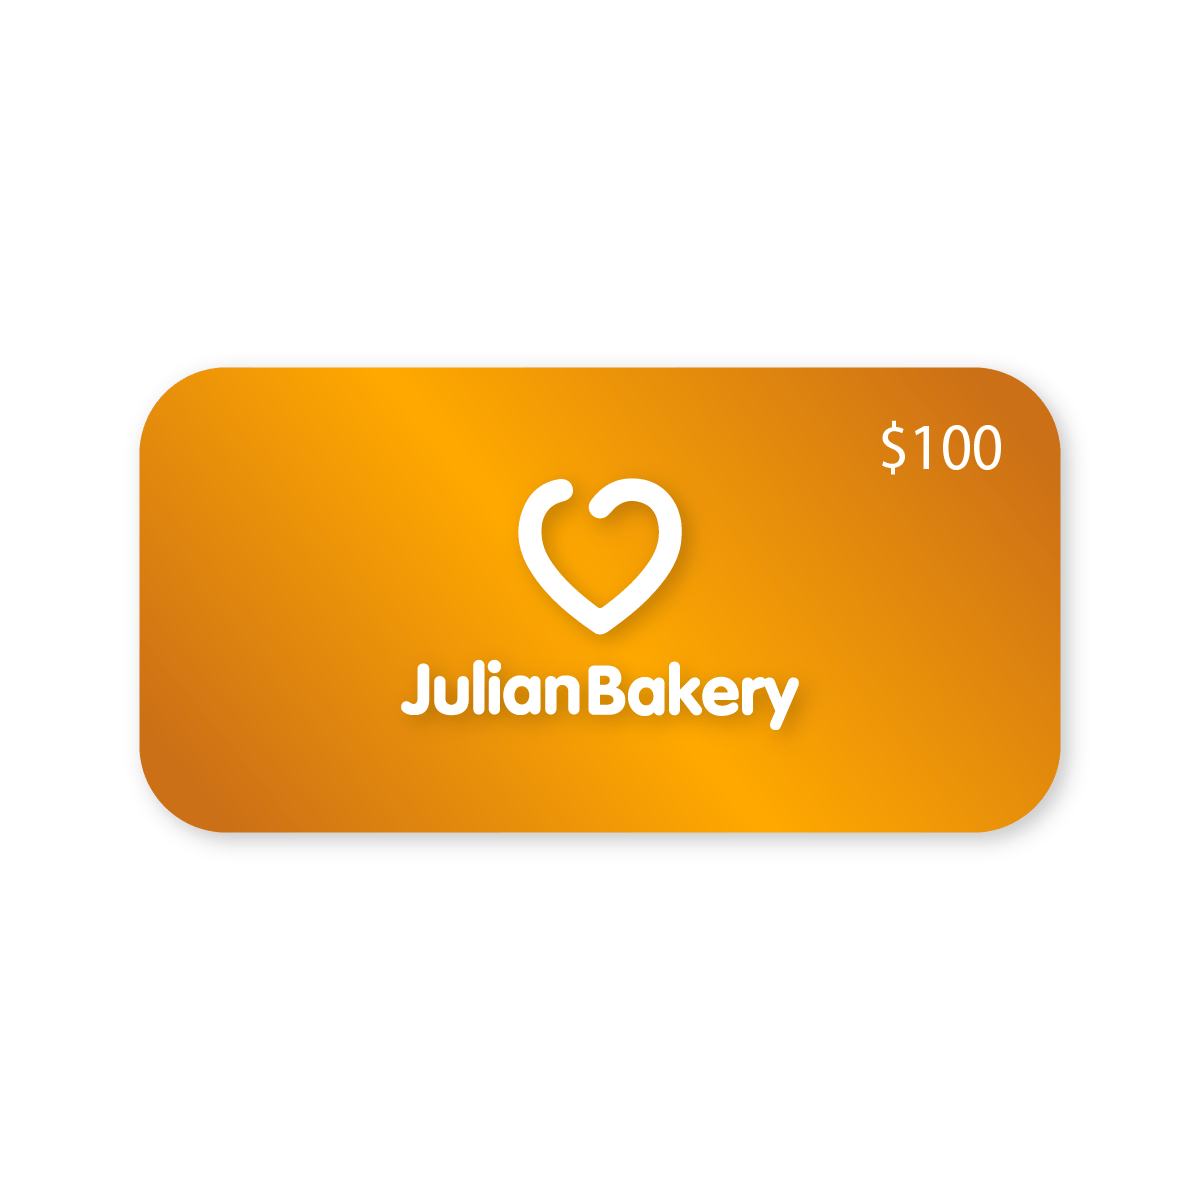 Julian's Gift Card - julianbakery